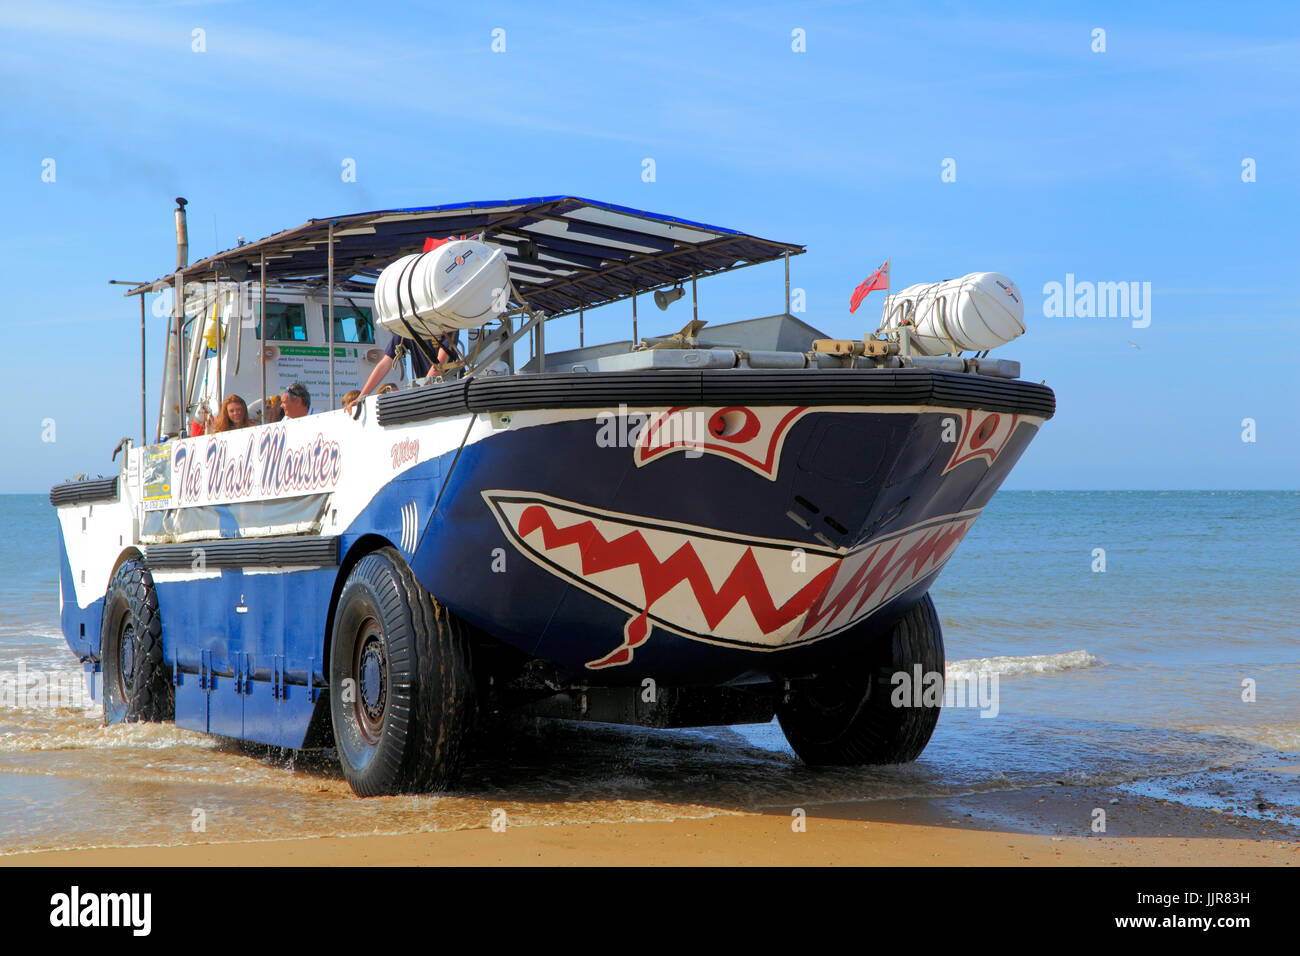 Le wash Monster, croisières, véhicule amphibie, plage de Hunstanton, Norfolk, England, UK Banque D'Images